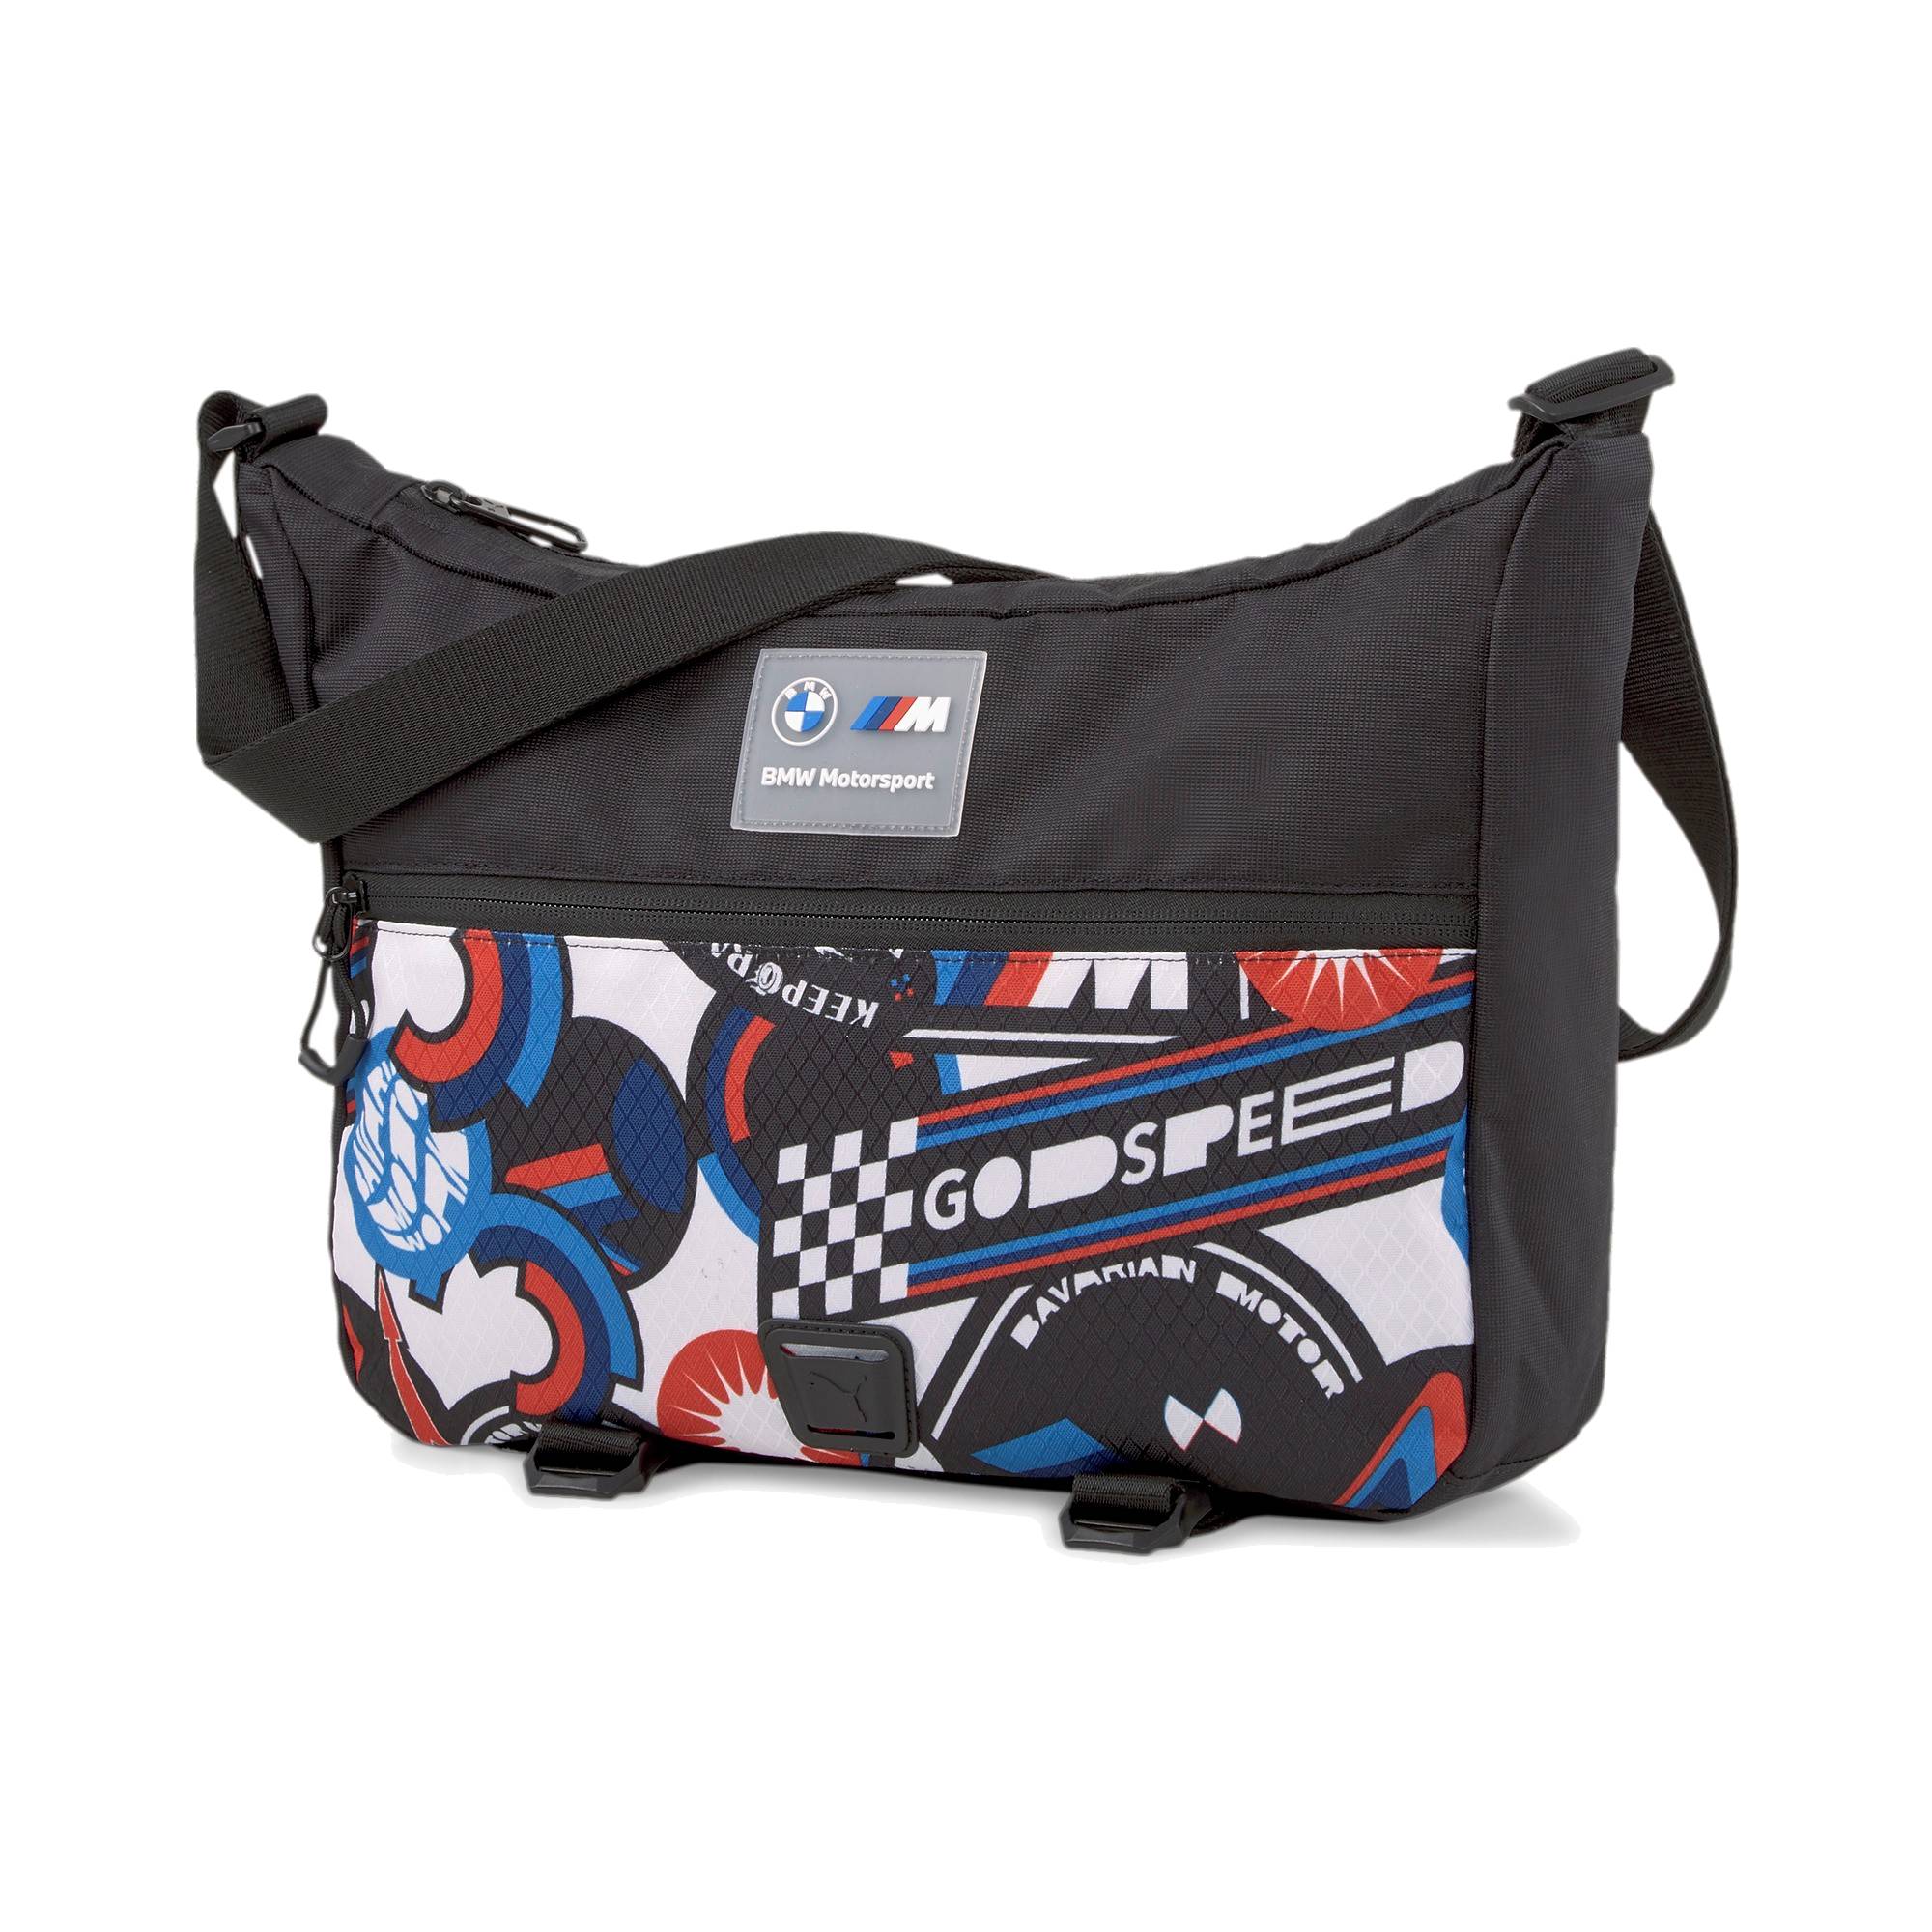 BMW Motorsport Puma messenger bag "MMS" - black